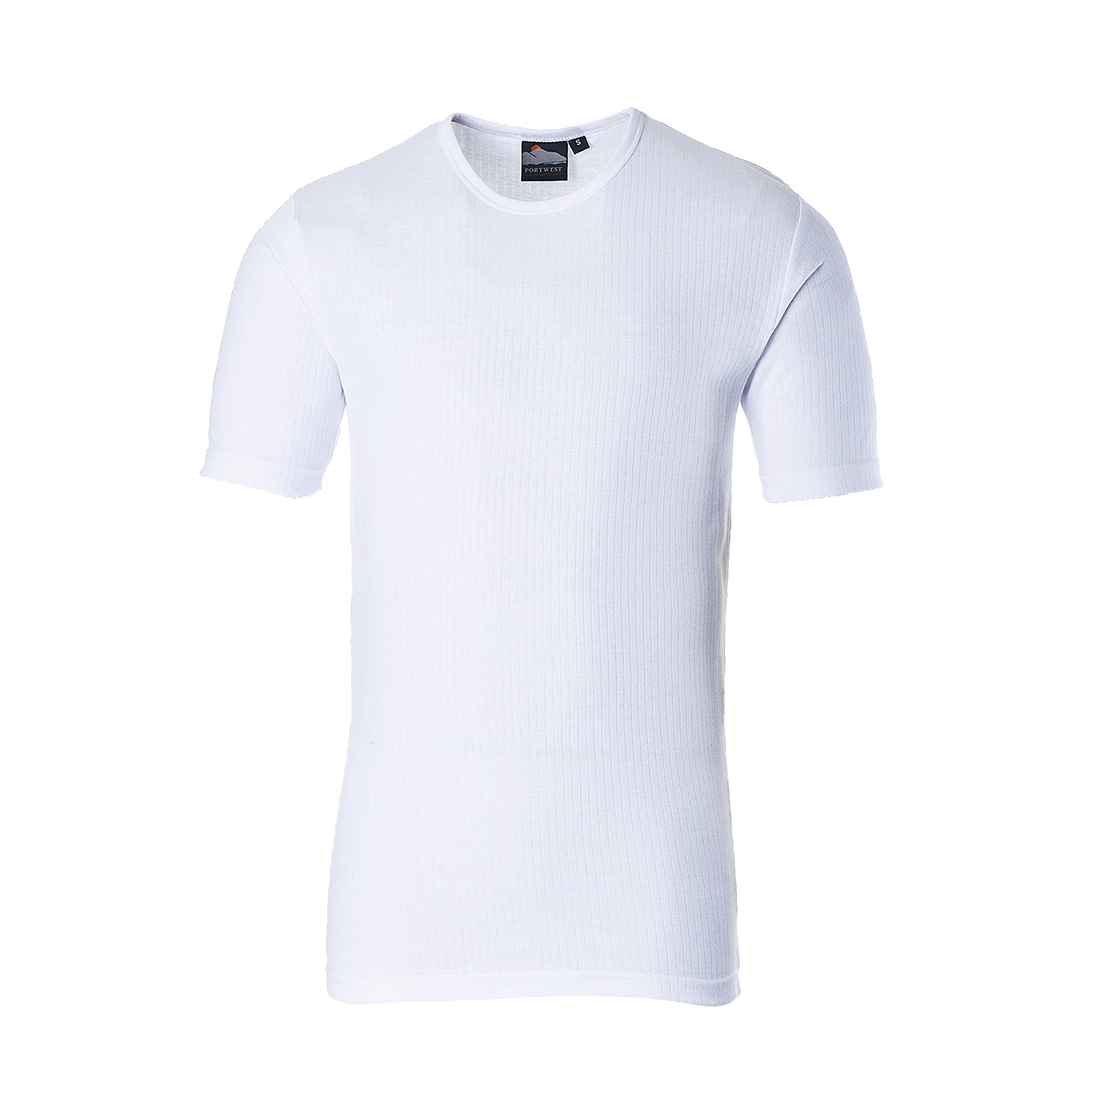 Thermo triko s krátkým rukávem Barva: bílá, Velikost: M